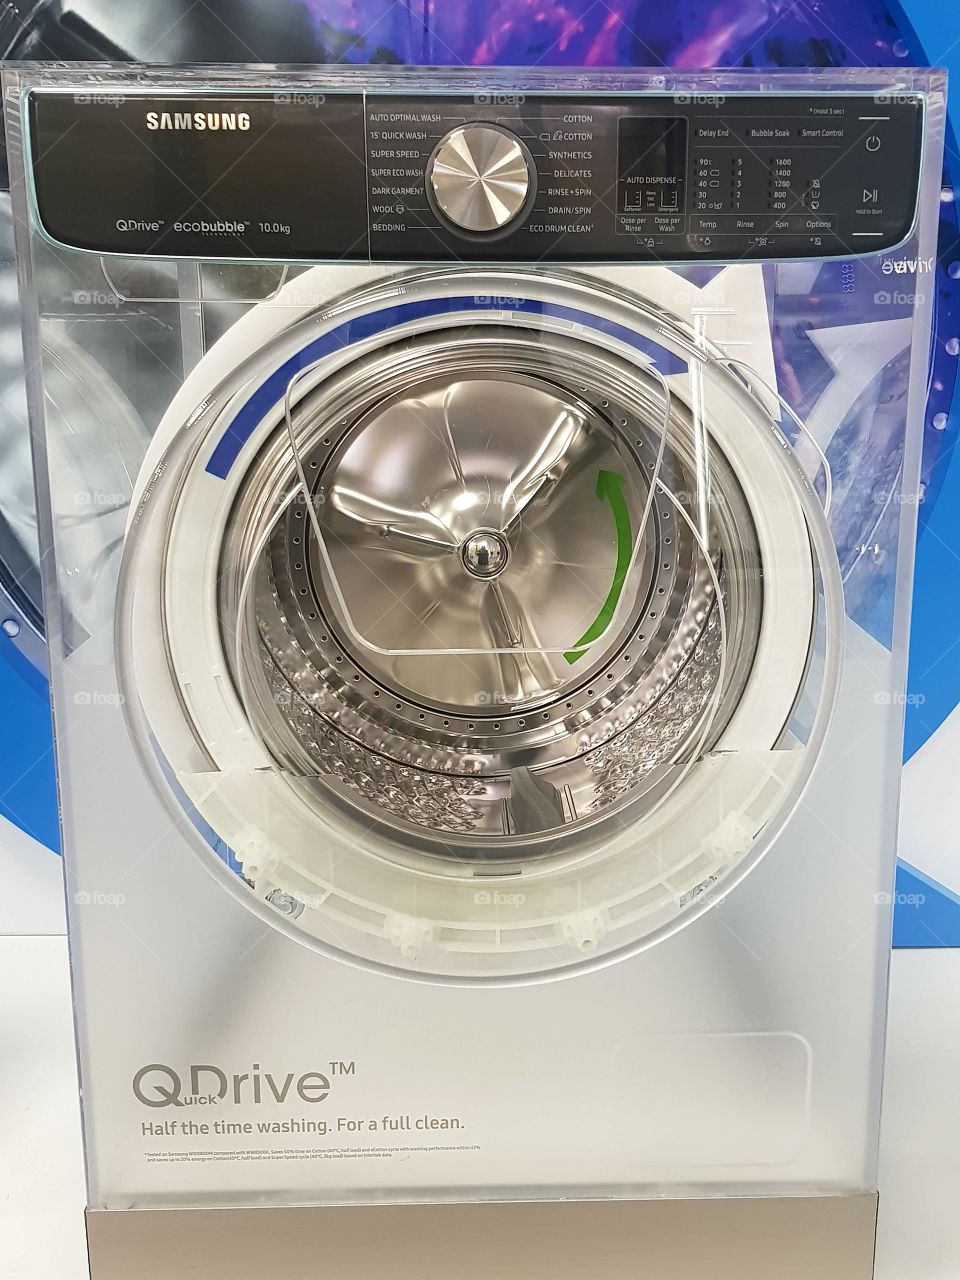 Samsung Quick drive washing machine and white goods